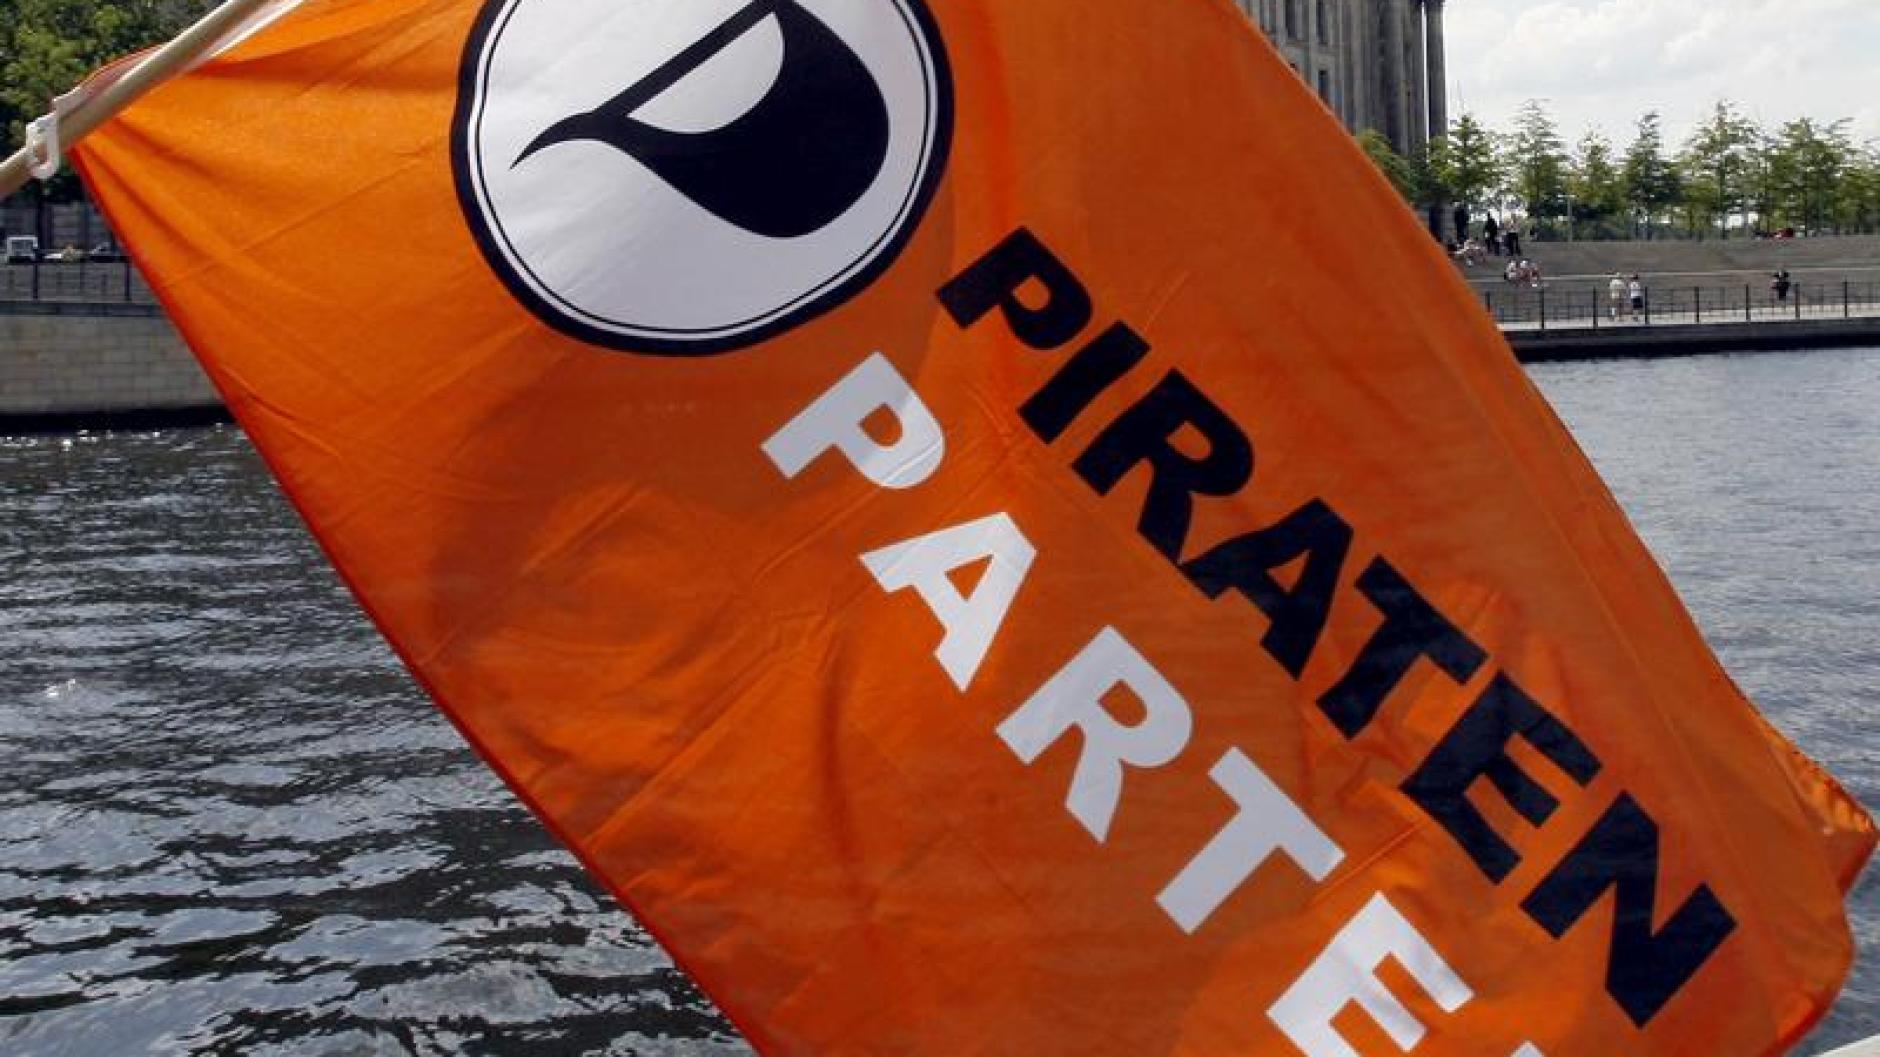 Immer Mehr Anträge Piratenpartei Im Aufwind Schon über 15 000 Mitglieder